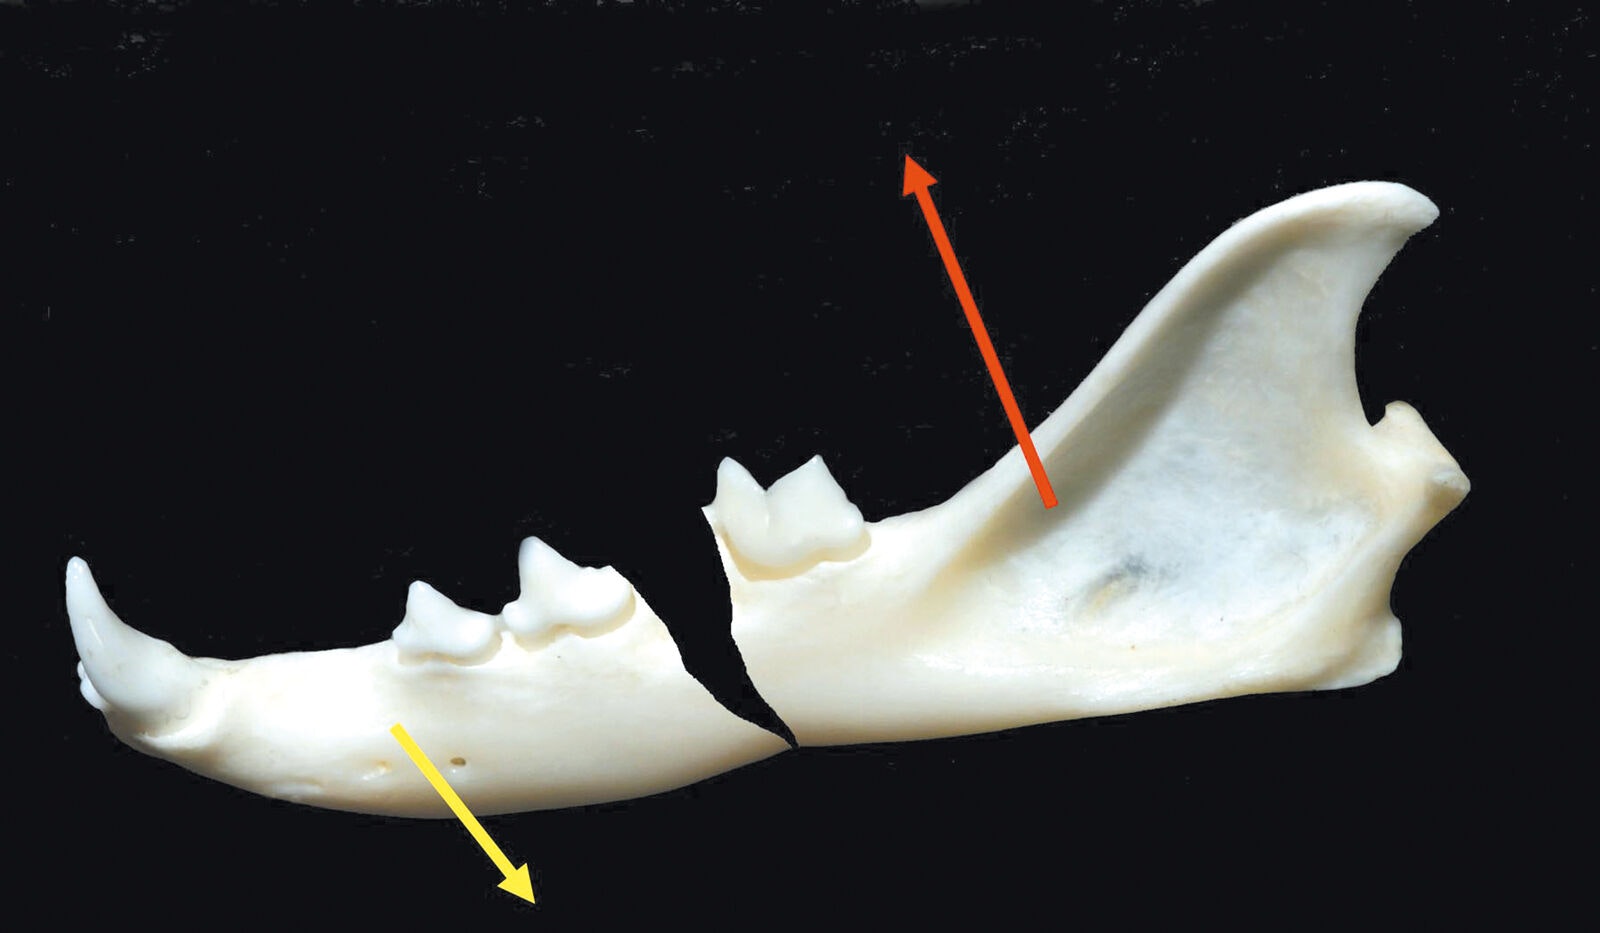 Figure 3. Fracture du corps de la mandibule ; la flèche jaune indique la direction des forces musculaires qui ouvrent la bouche ; la flèche rouge indique la direction des forces musculaires qui ferment la bouche. Ecartement de la fracture et défaut d’alignement. 